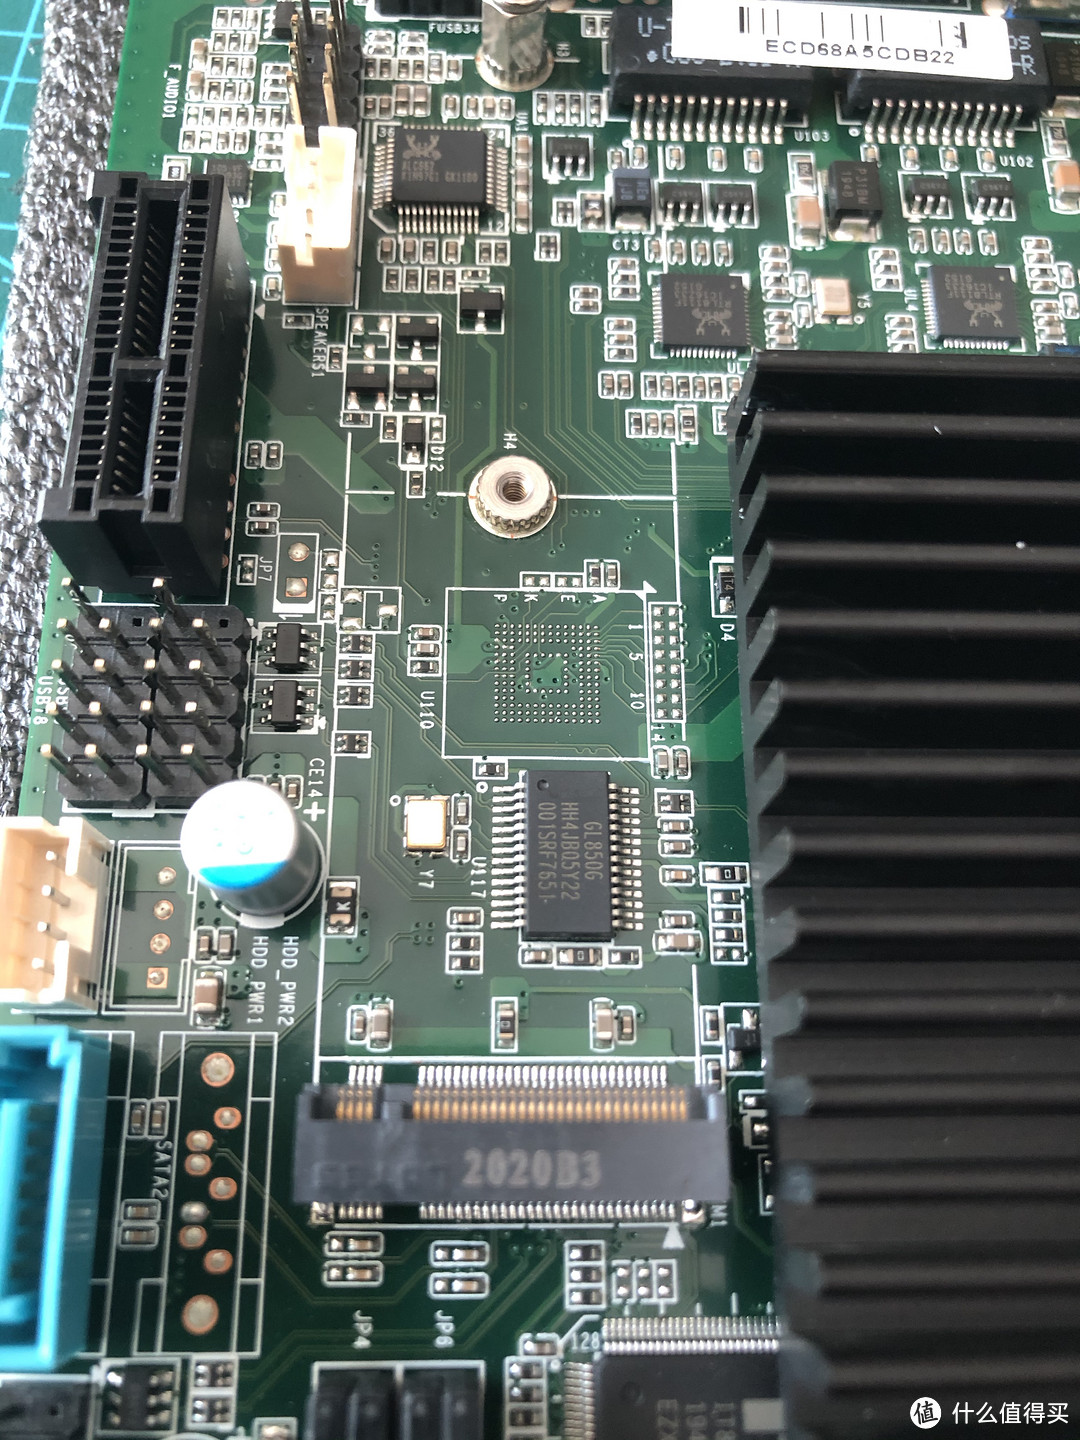 mini PCIe插槽，可以用miniPCIe SATA扩展卡，图中左上角是PCIe插槽